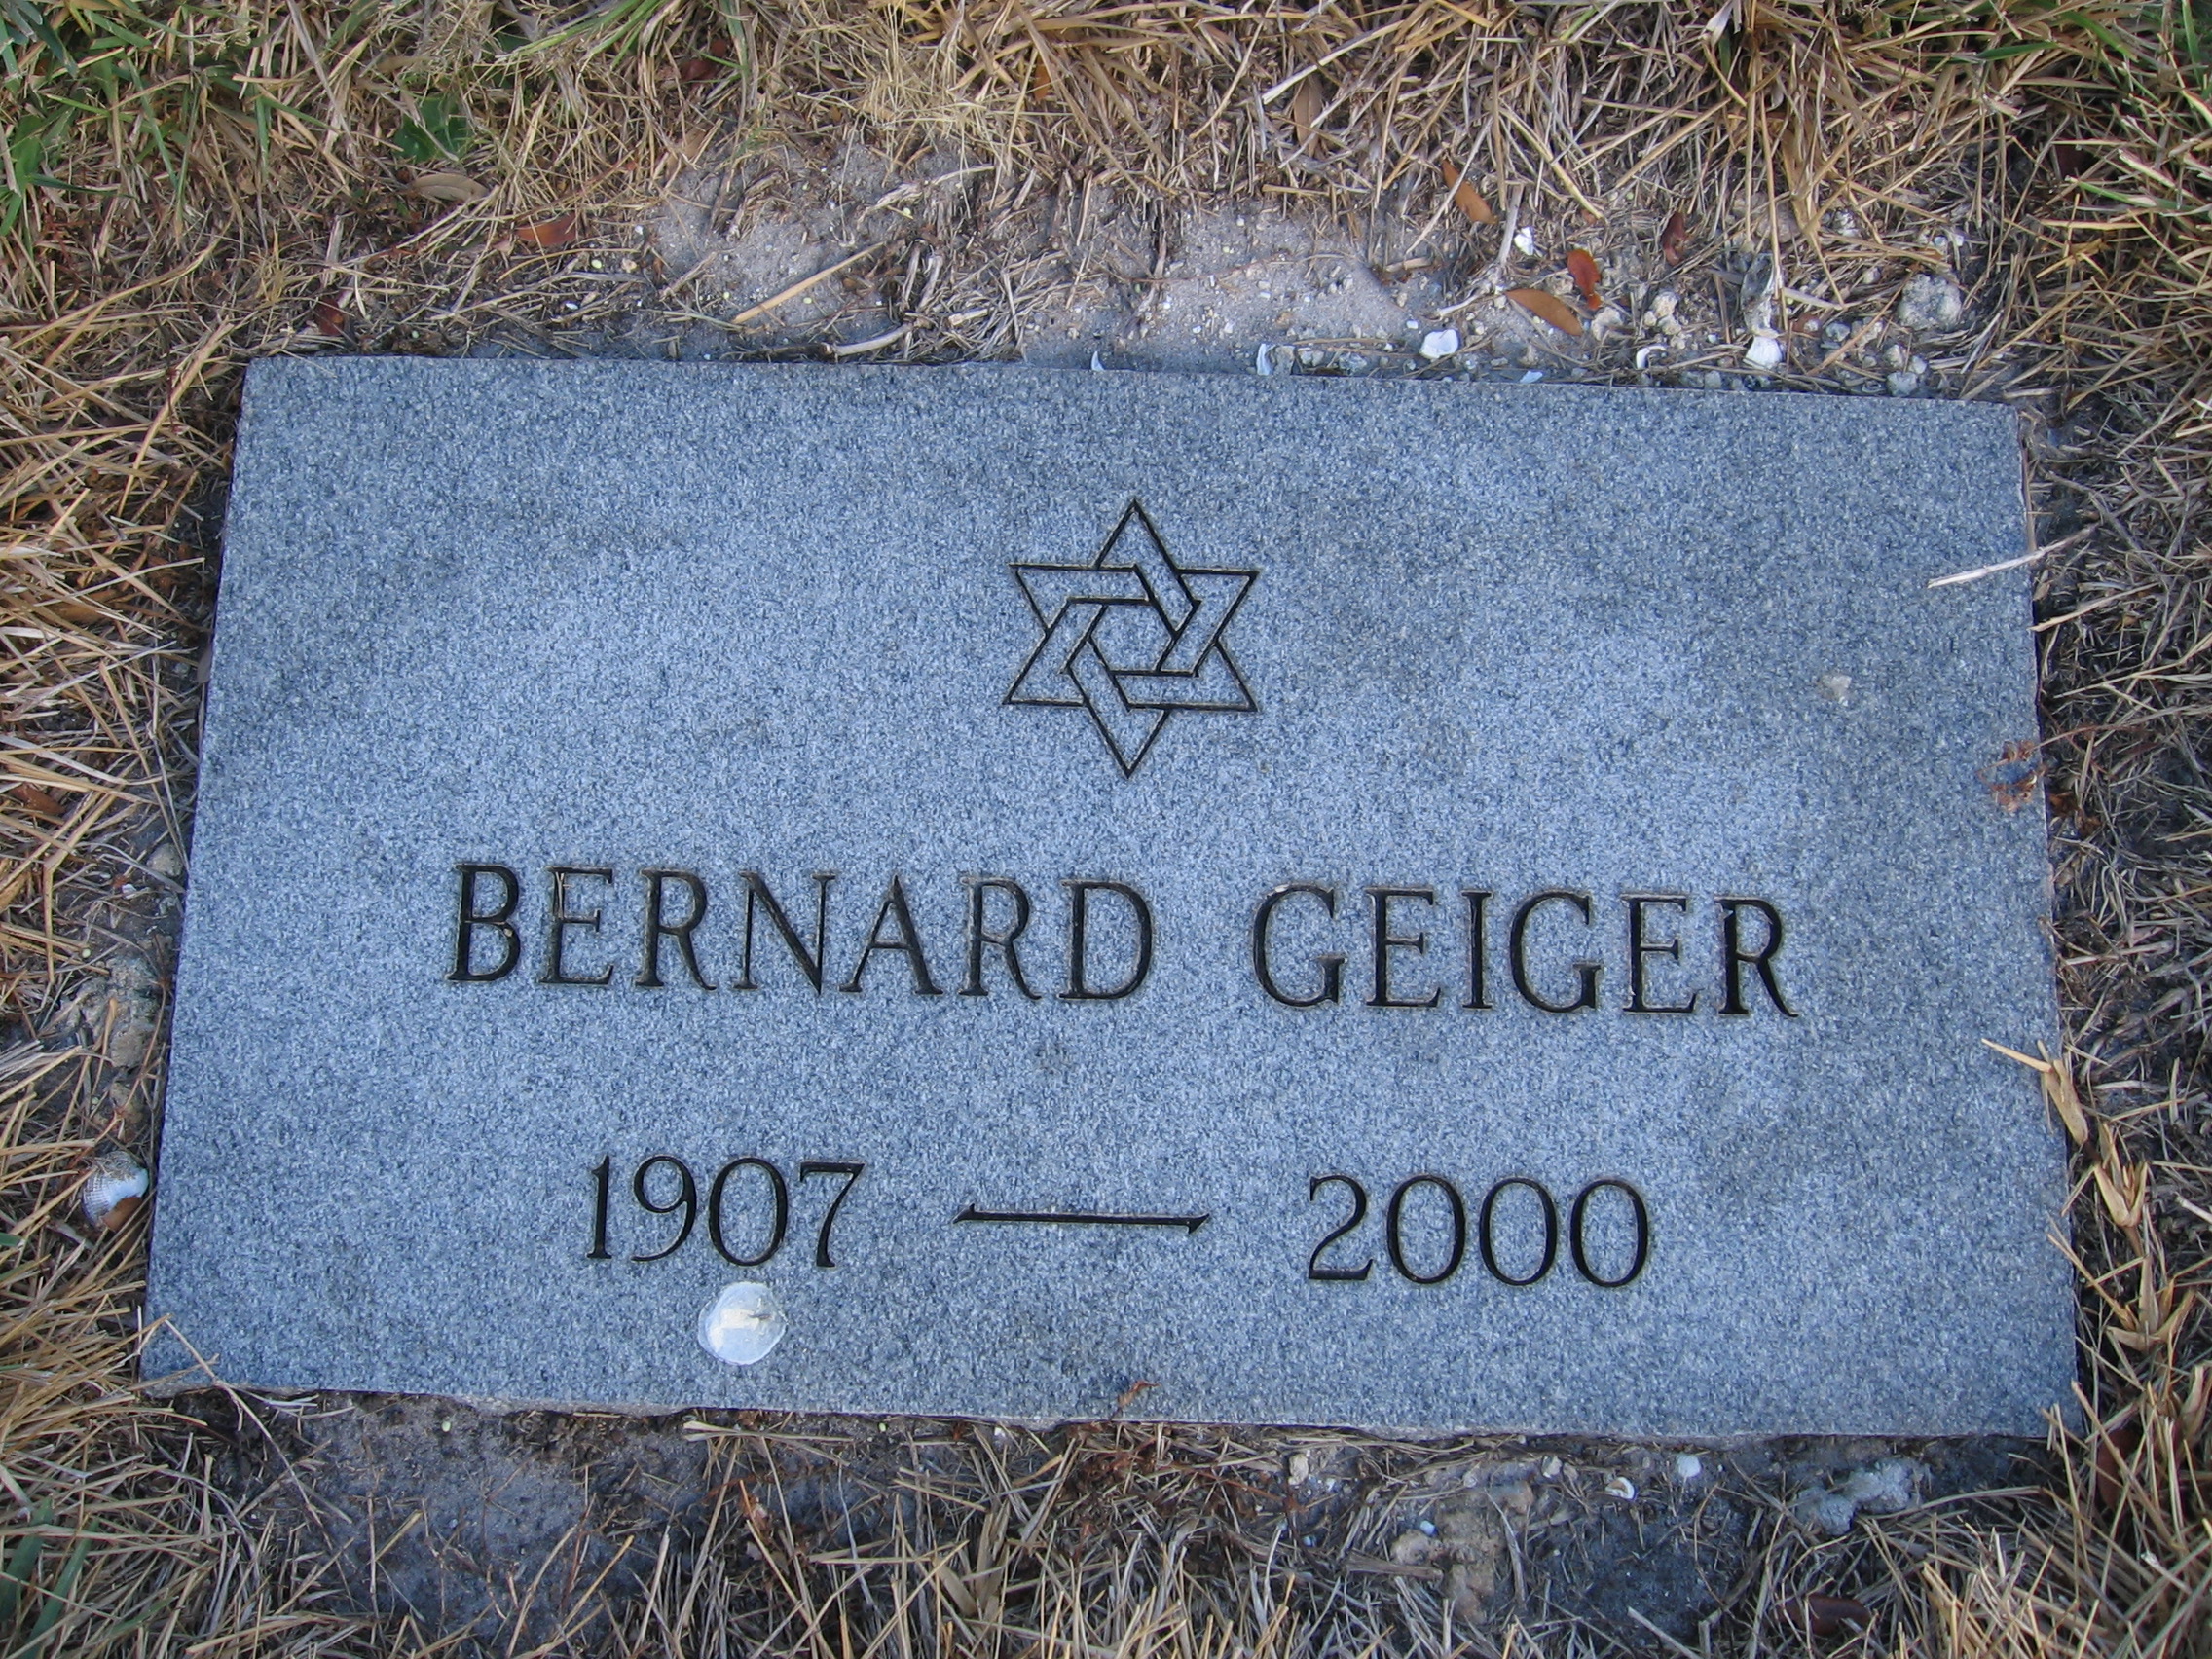 Bernard Geiger